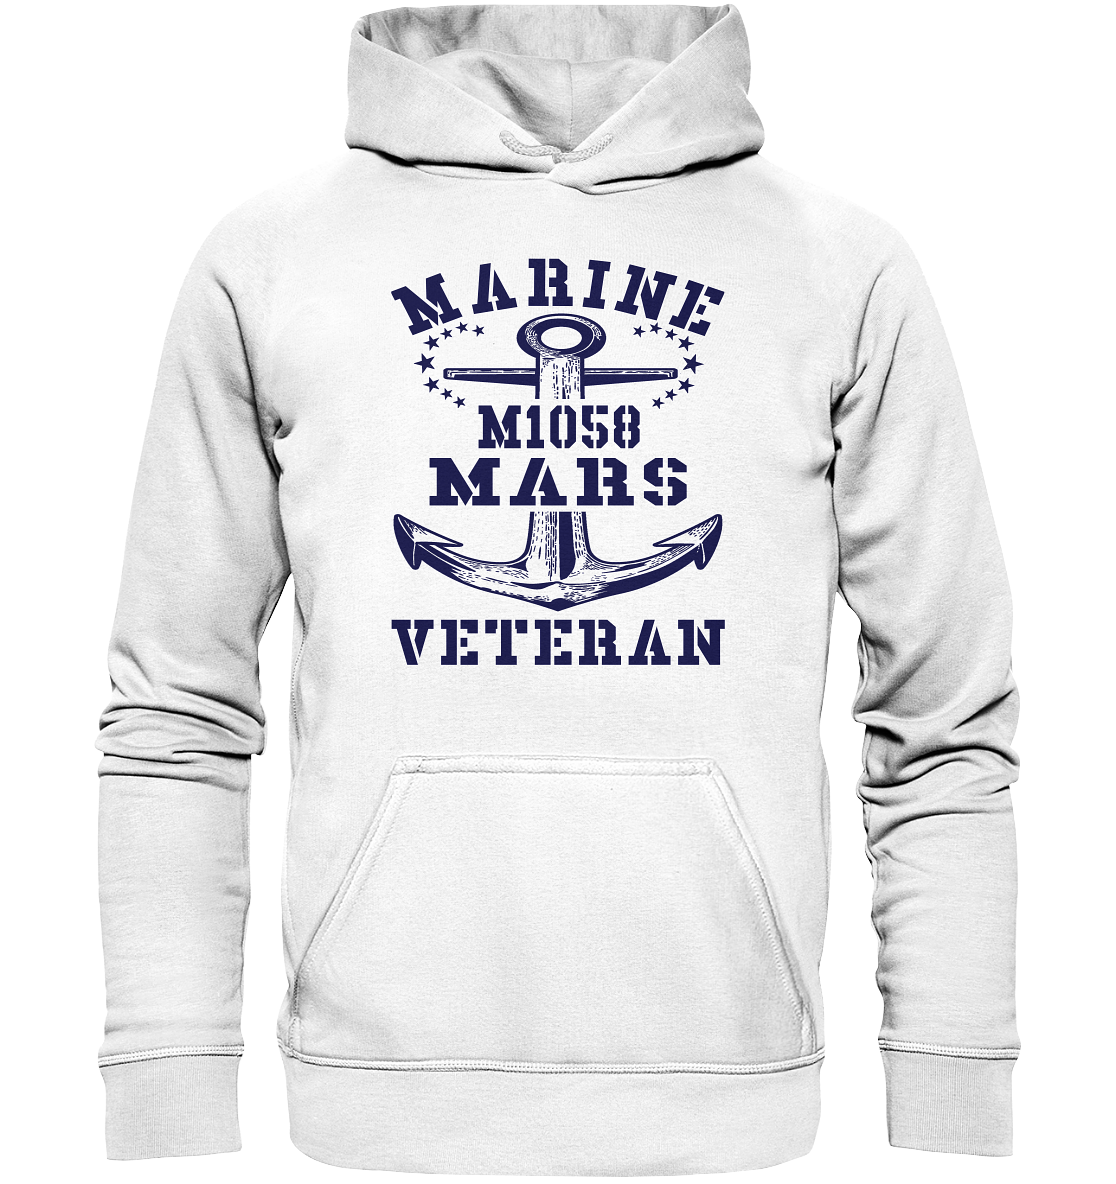 SM-Boot M1058 MARS Marine Veteran - Basic Unisex Hoodie